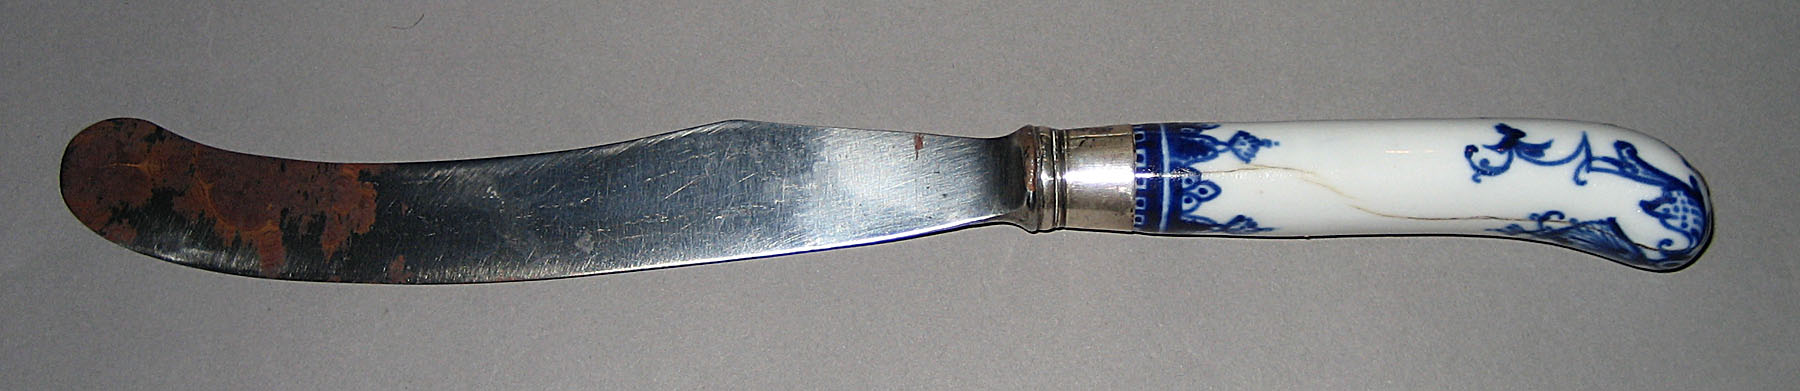 1964.0570.007 Knife